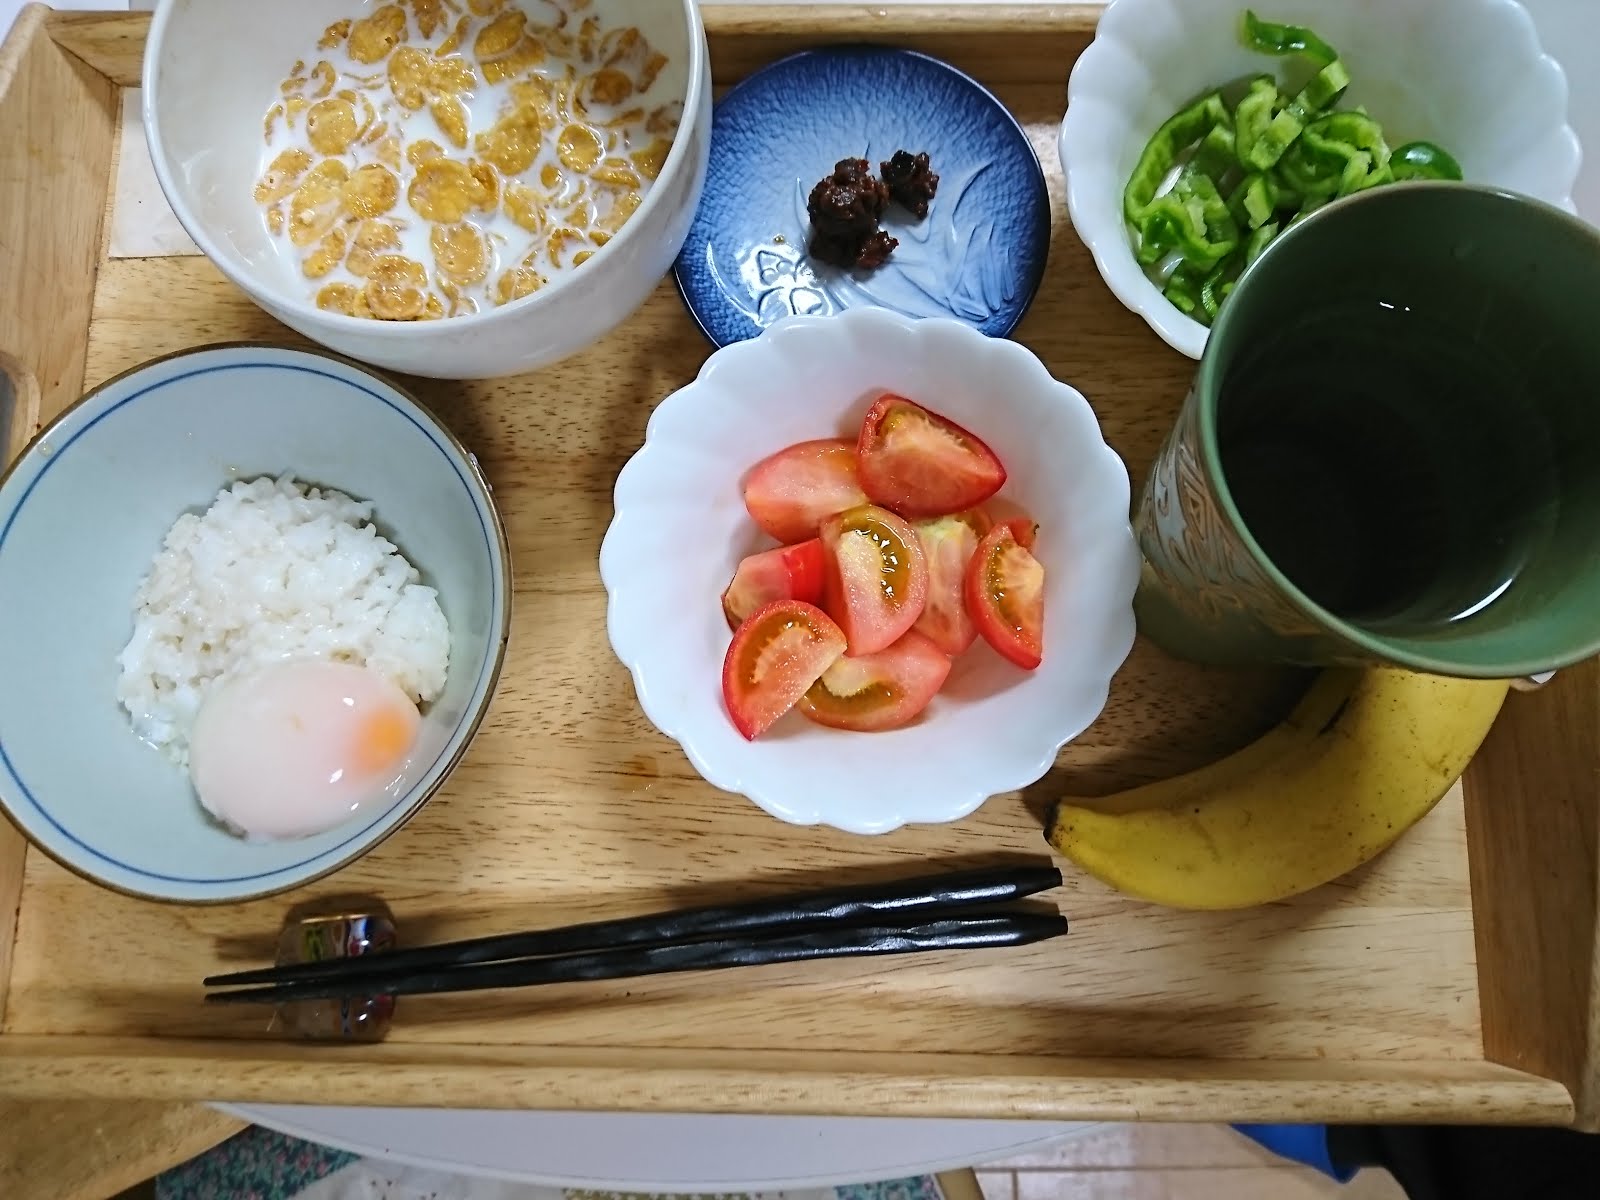 八木東一のブログ 10 10 夕食に牛乳かけシリアルと茹で玉子かけご飯を